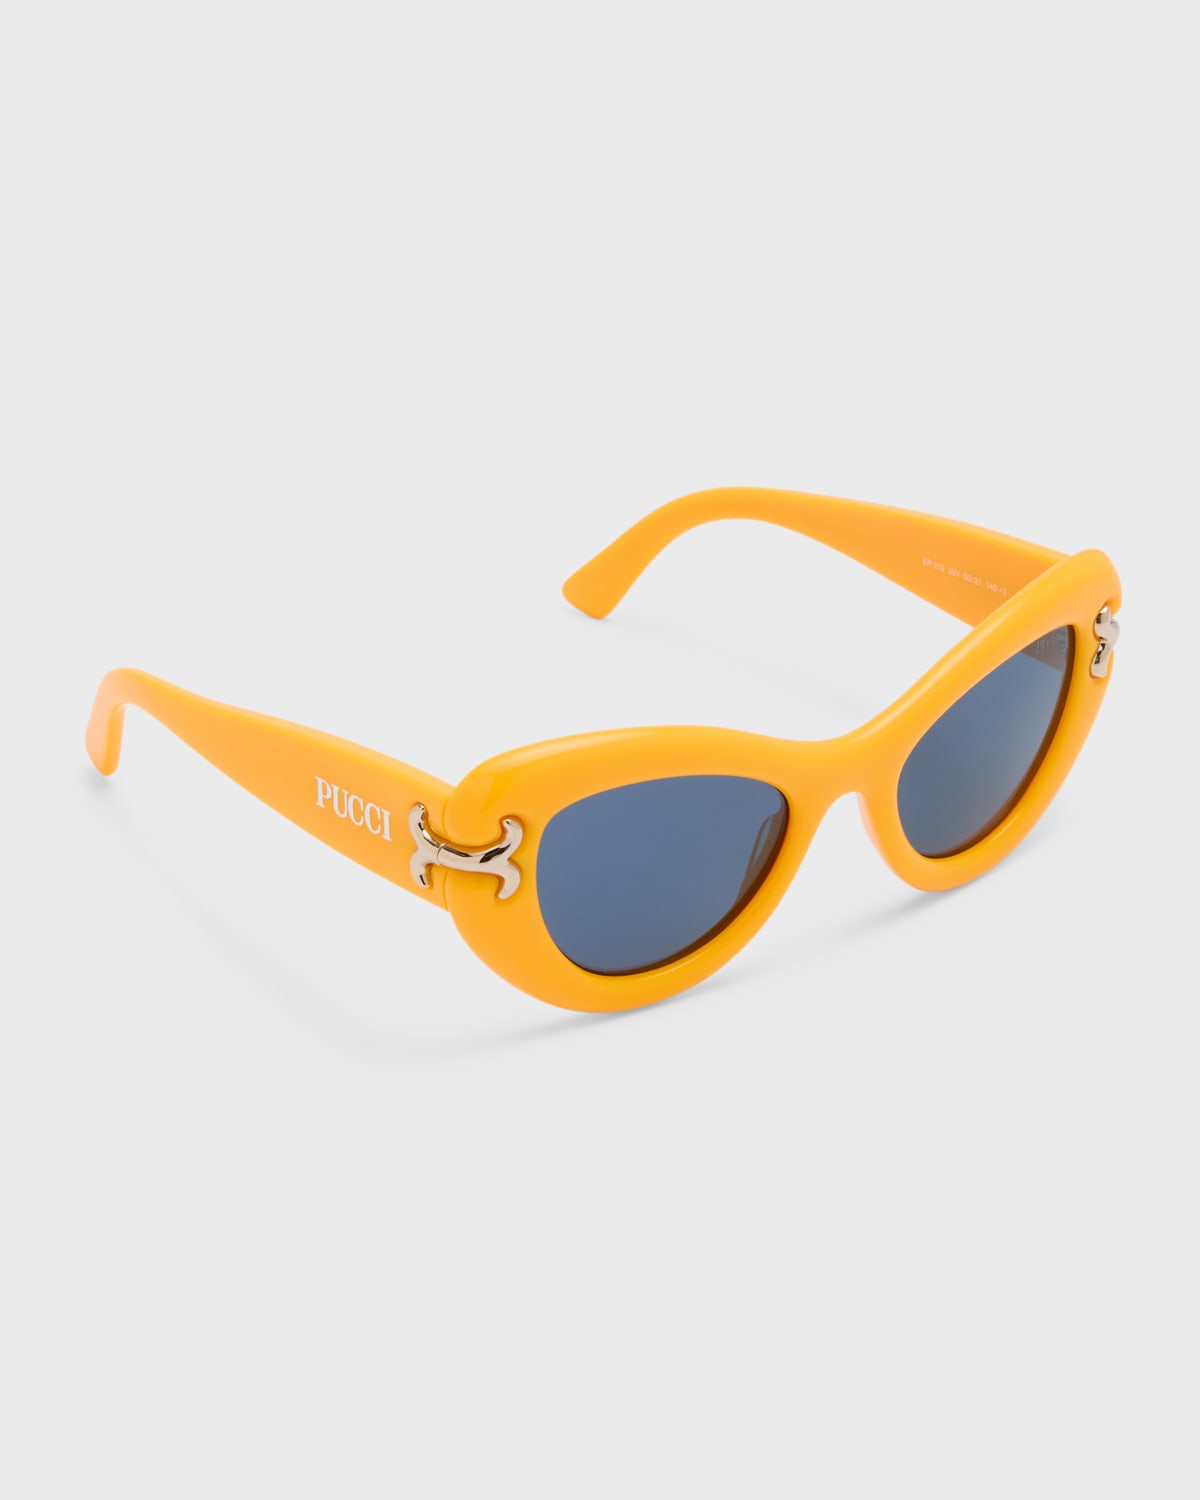 Filigree Acetate & Metal Cat-Eye Sunglasses